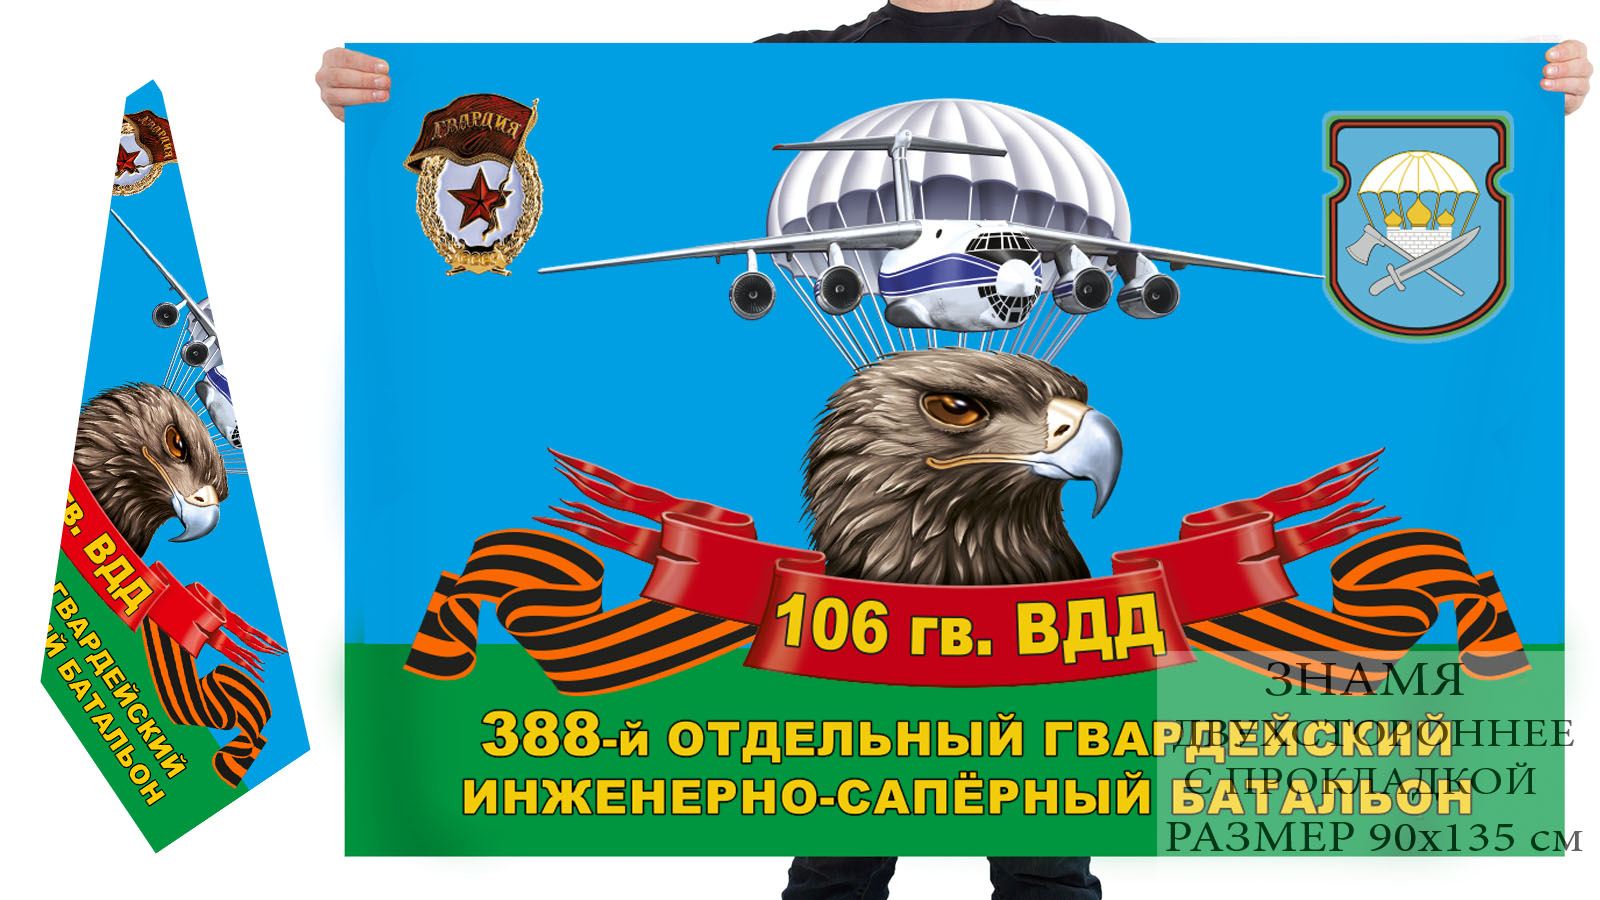 Двусторонний флаг 388 гвардейского ОИСБ 106 гв. ВДД